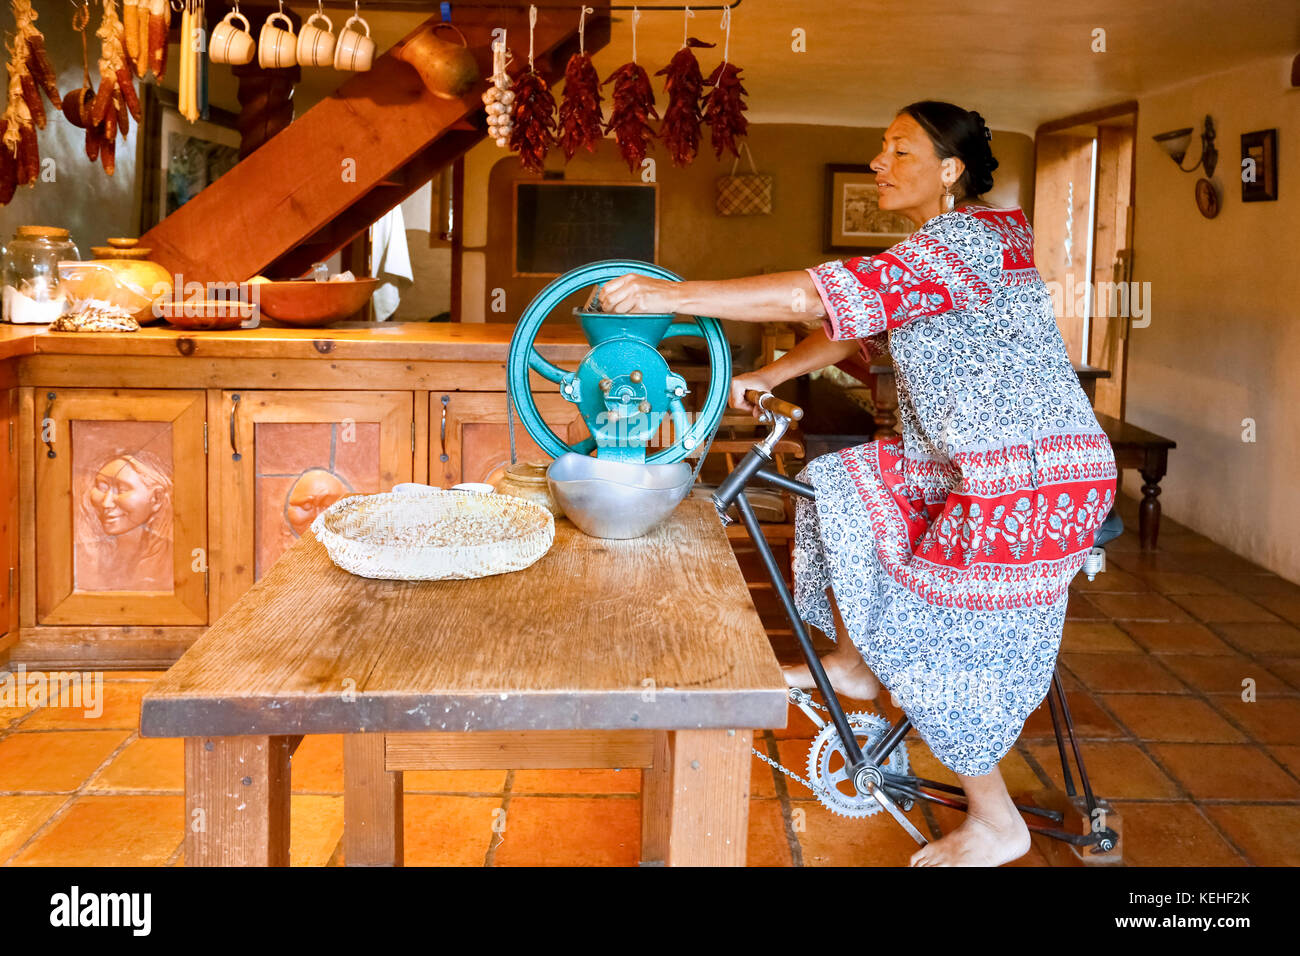 Femme qui fait du vélo pour le moulin à café dans la cuisine Banque D'Images